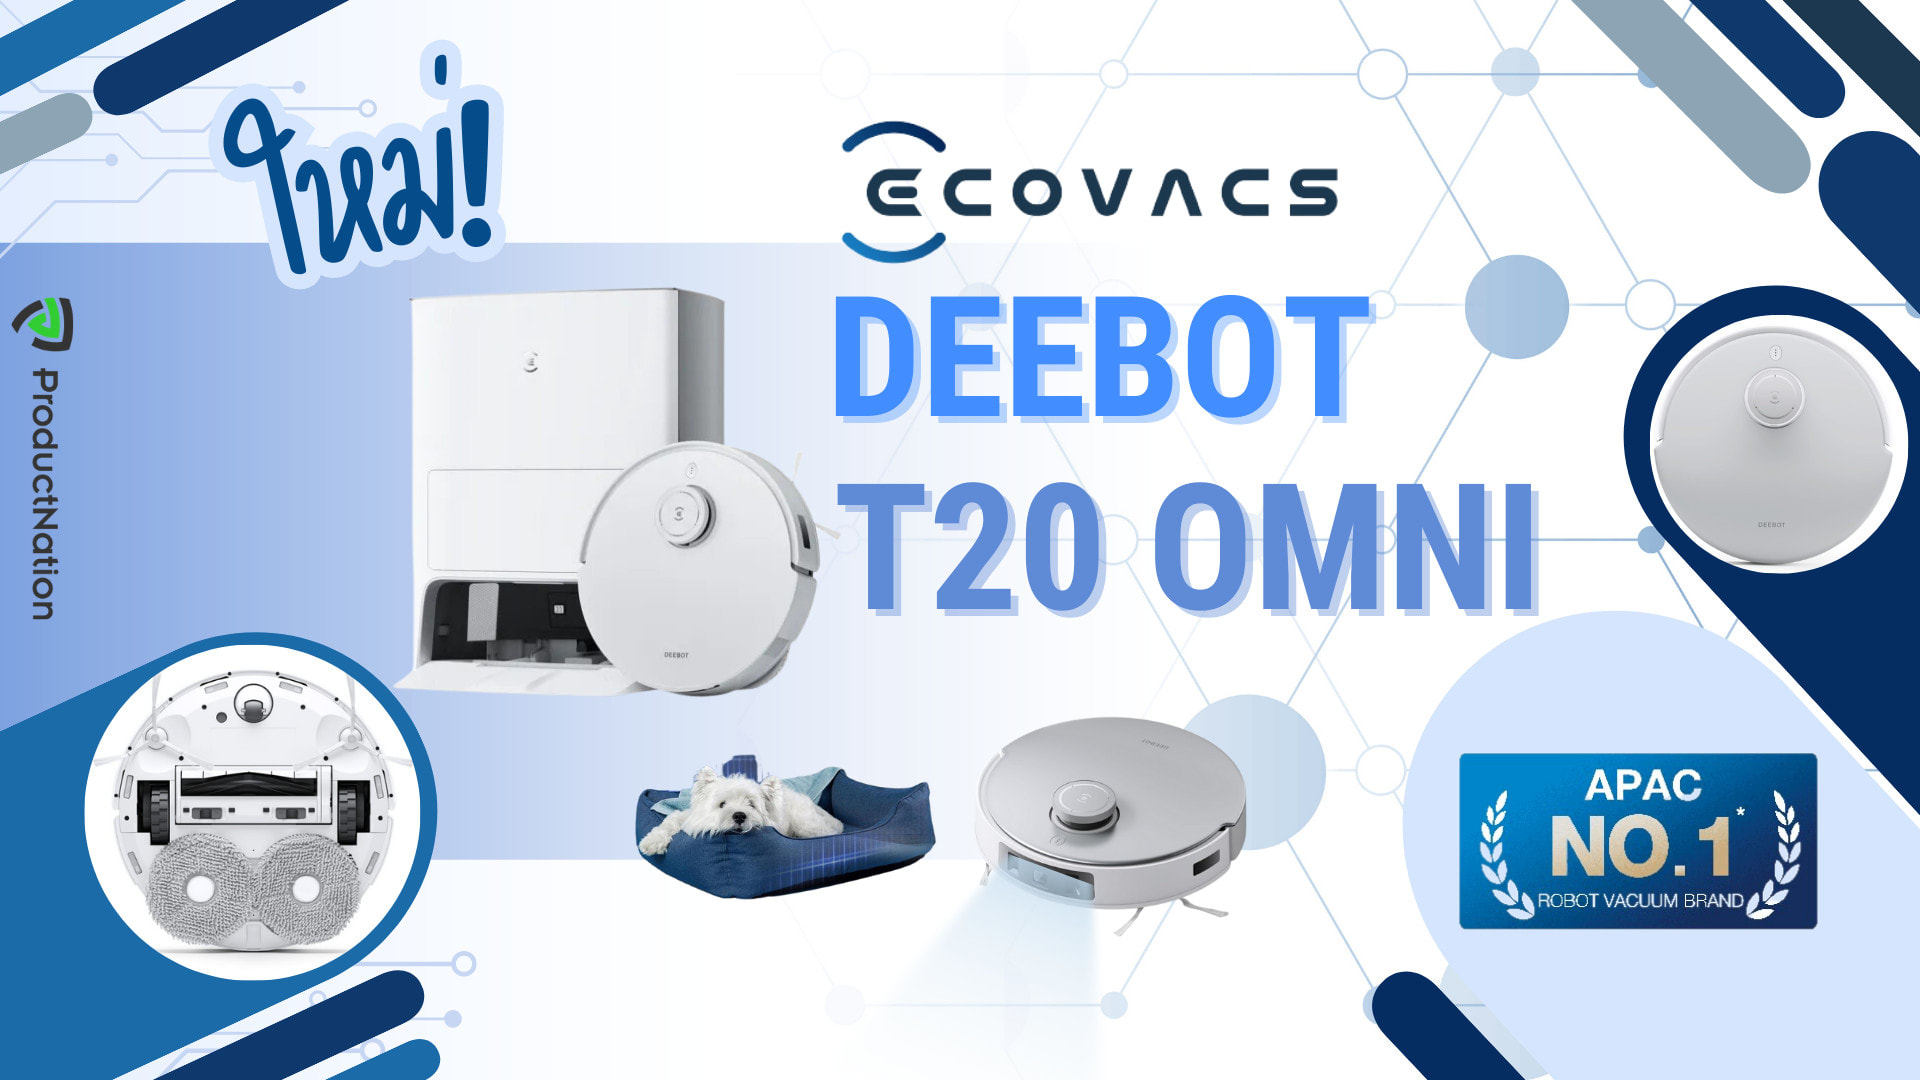 แนะนำ หุ่นยนต์ดูดฝุ่นและถูพื้น ECOVACS DEEBOT T20 OMNI ให้บ้านไร้ฝุ่น สะอาดได้มากกว่าที่เคย-cover